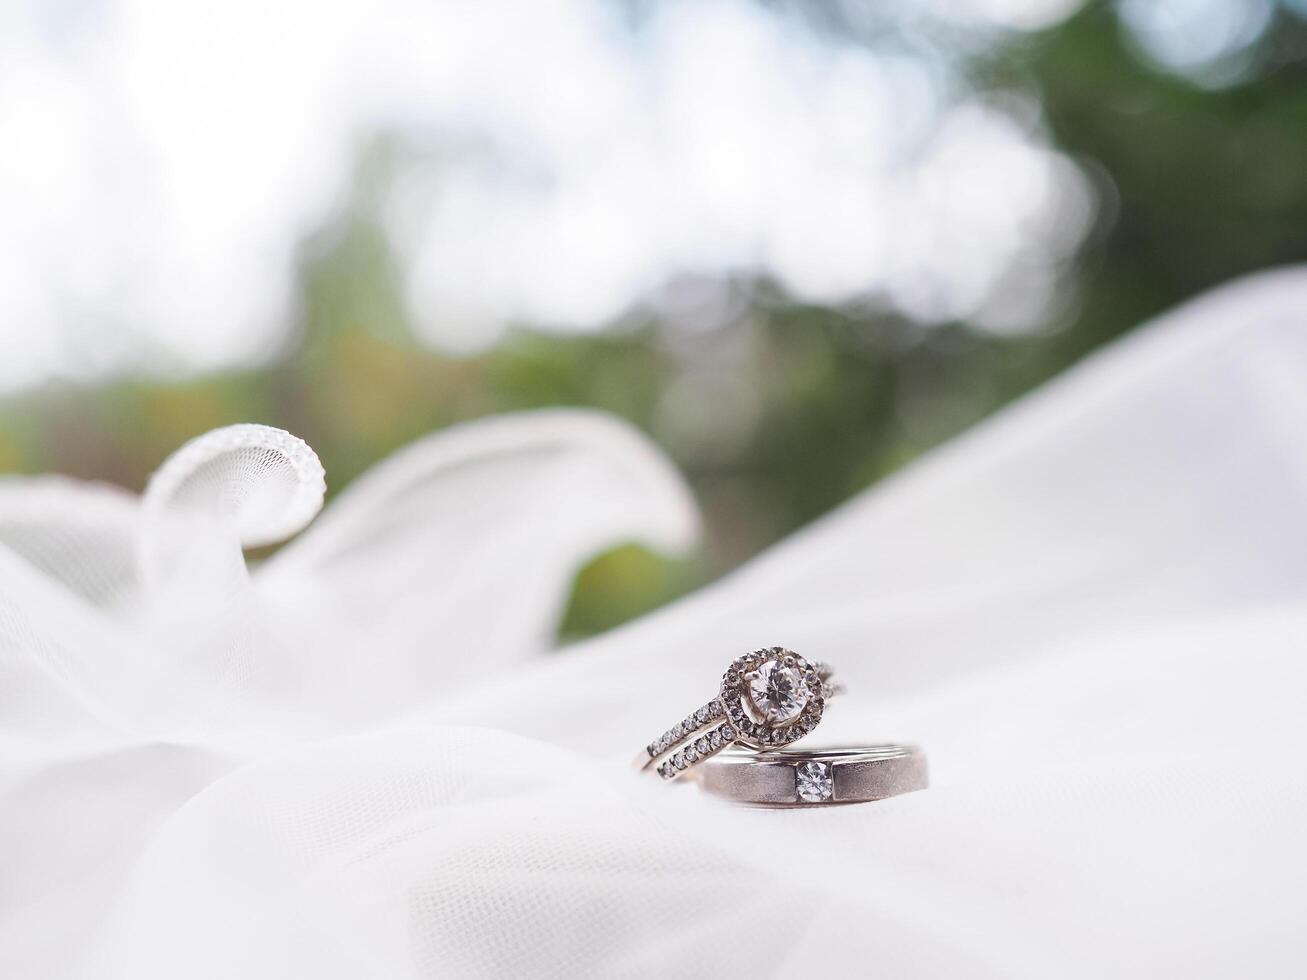 diamant engagement mariage anneaux sur de mariée voile. mariage accessoires. la Saint-Valentin journée et mariage journée concept. photo